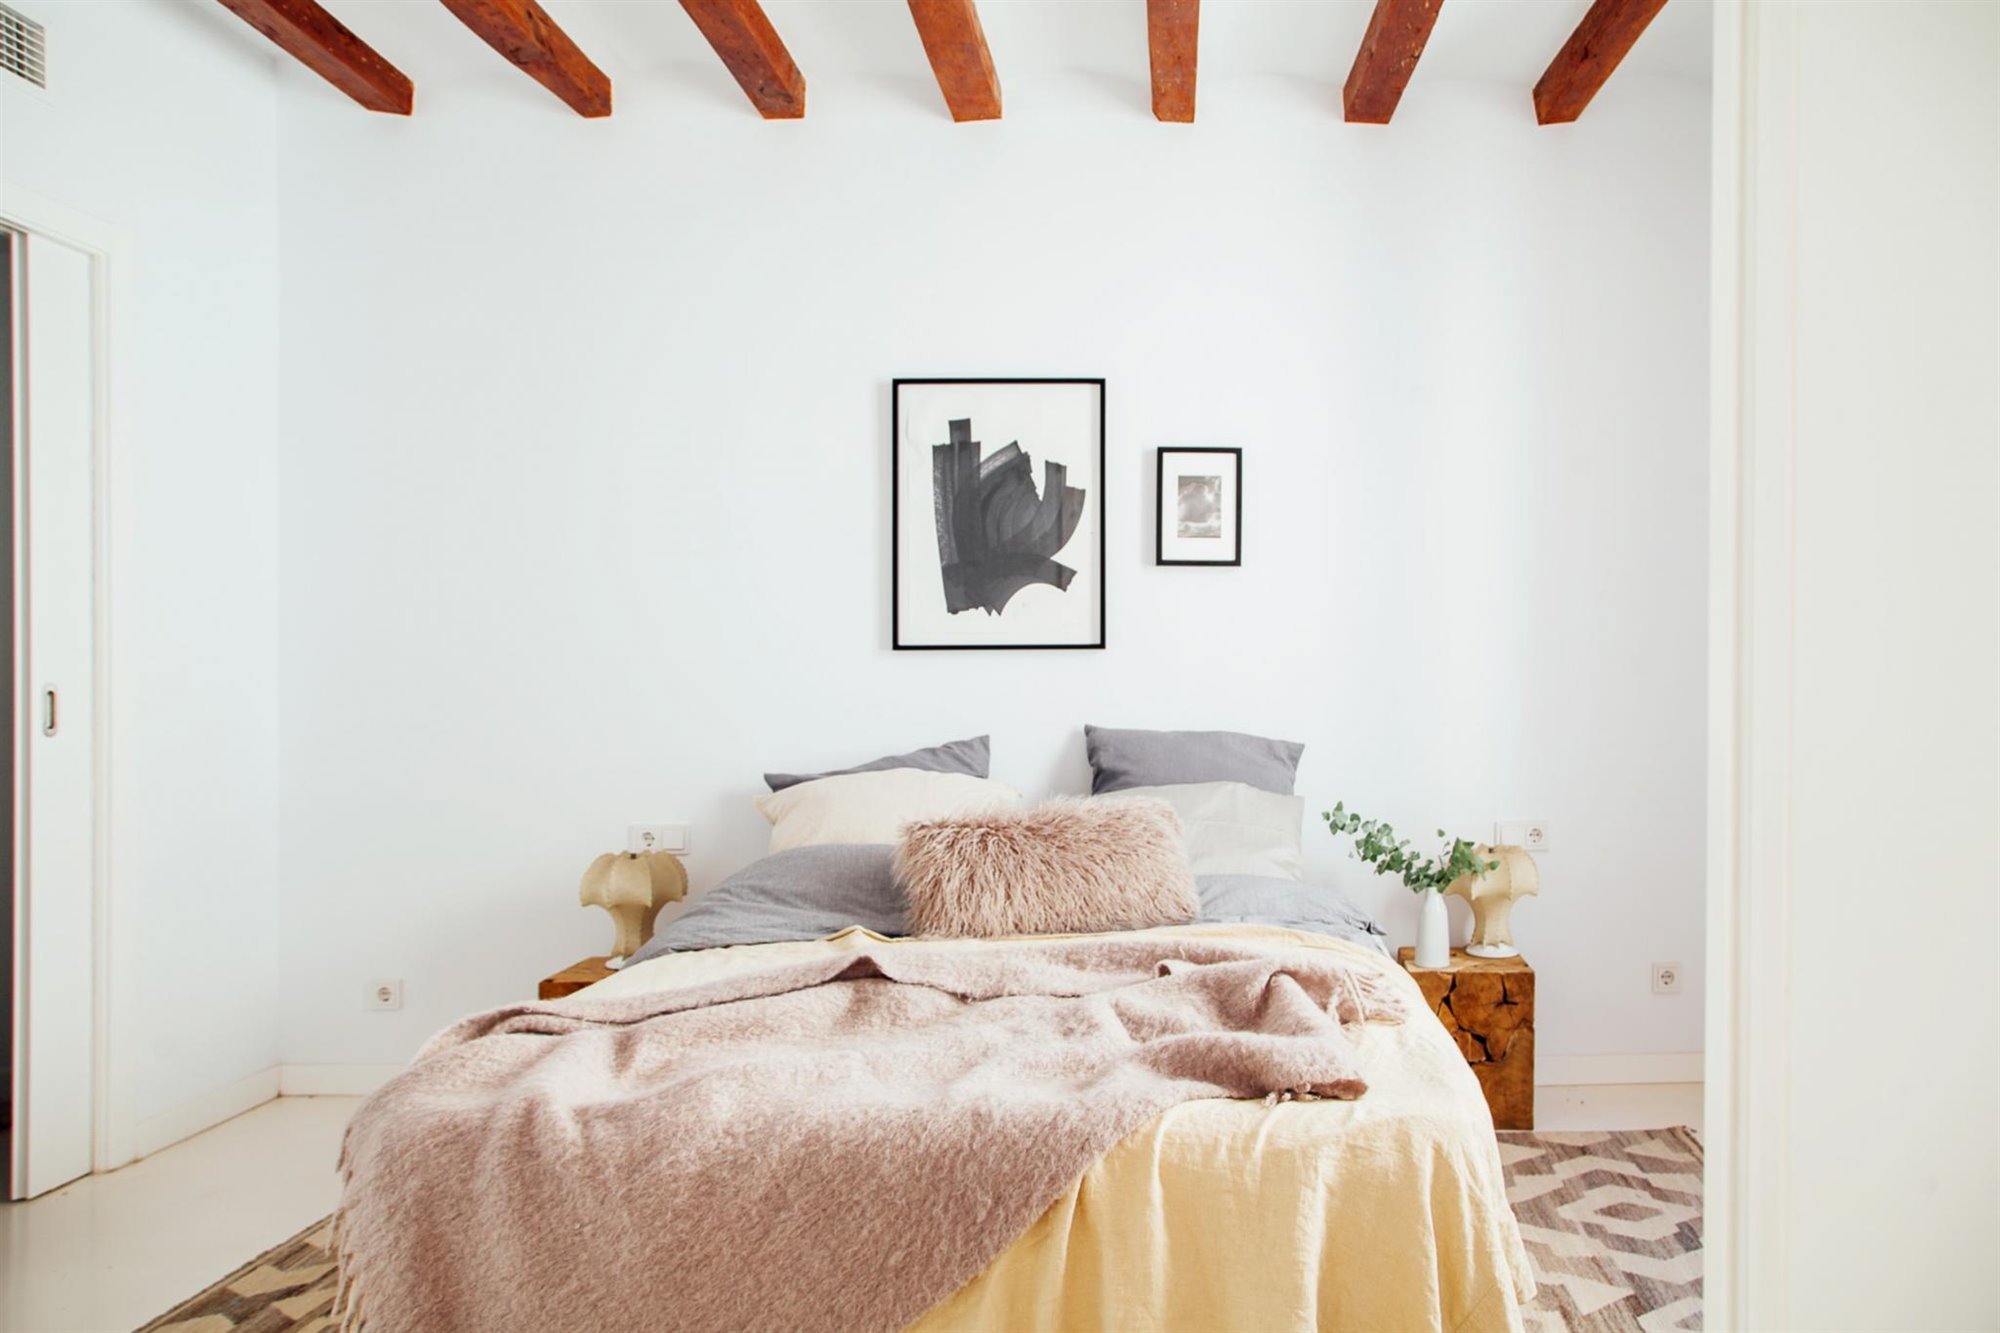 Dormitorio con ropa de cama natural y vigas vistas. Tejidos naturales